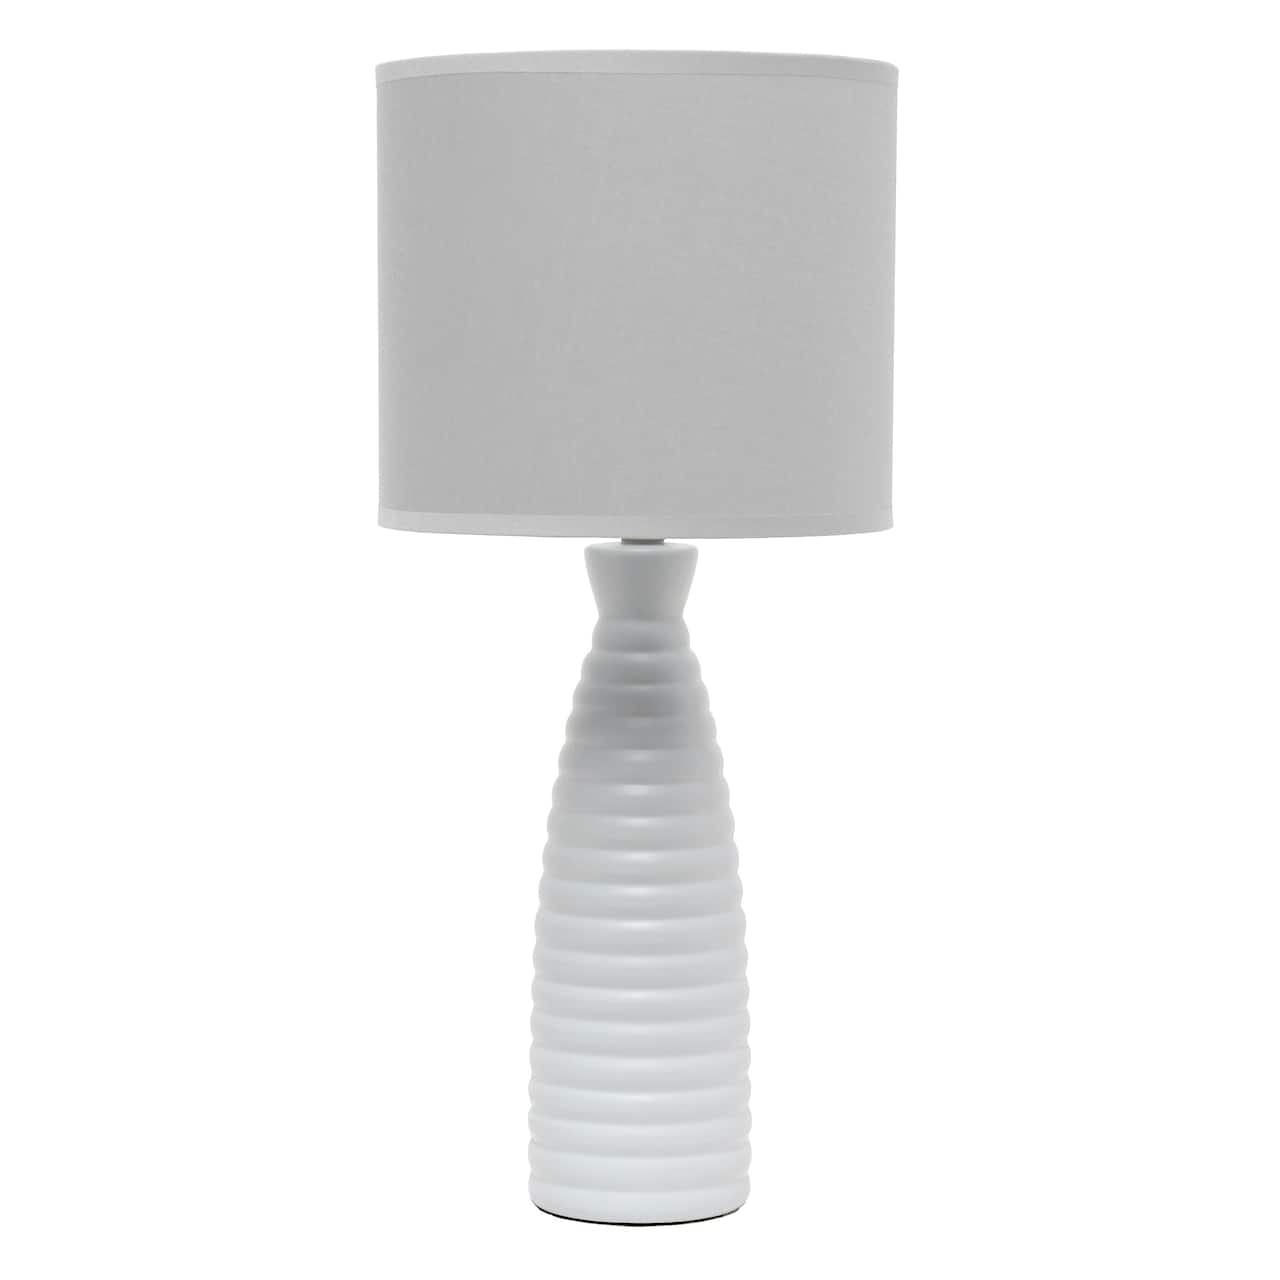 Simple Designs Alsace Bottle Table Lamp